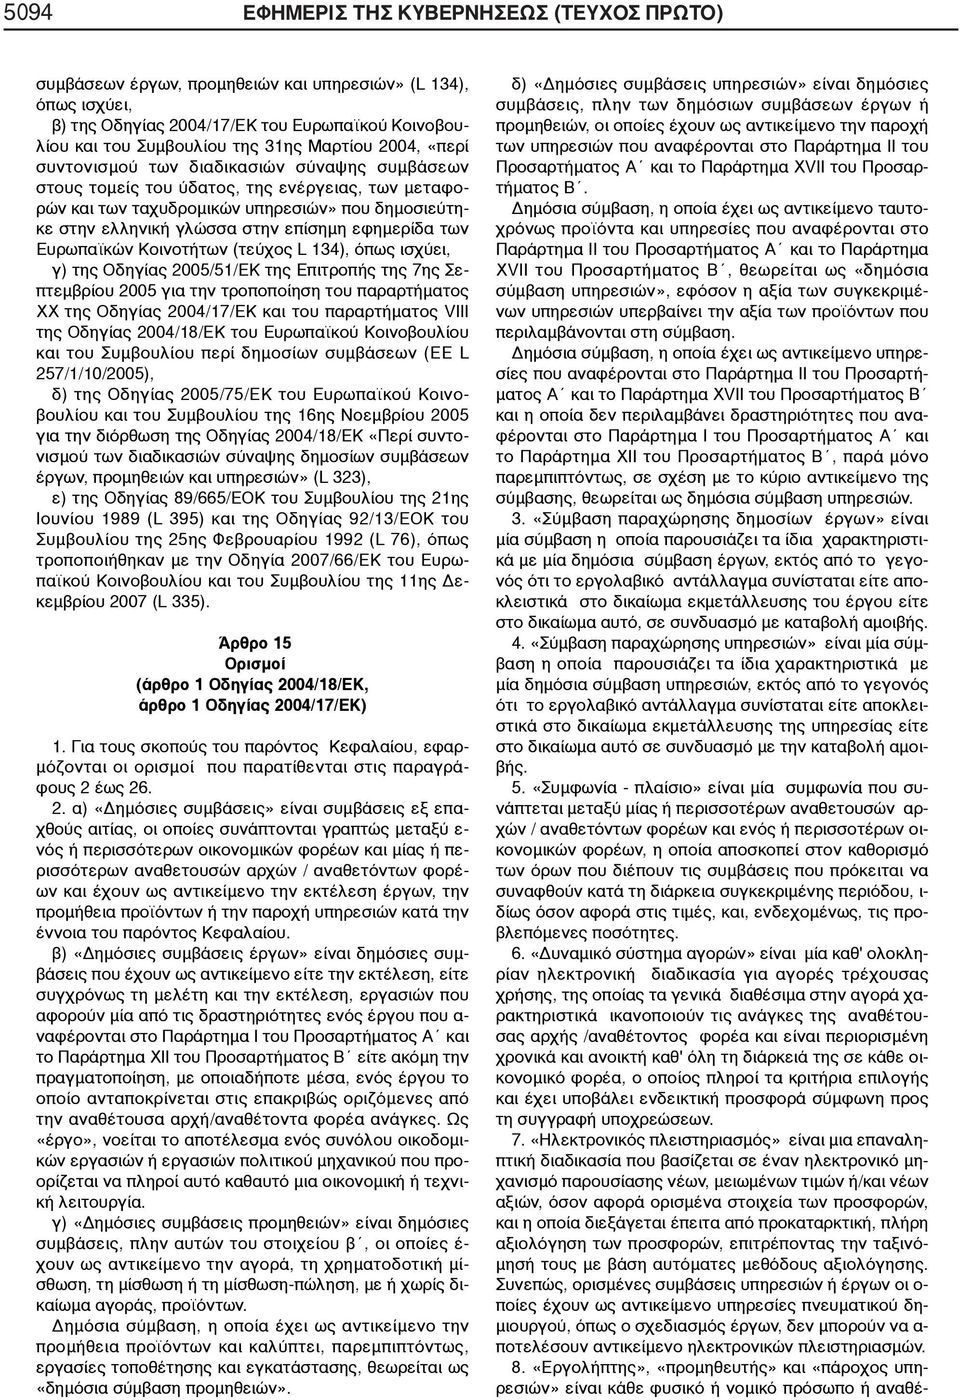 εφημερίδα των Ευρωπαϊκών Κοινοτήτων (τεύχος L 134), όπως ισχύει, γ) της Οδηγίας 2005/51/ΕΚ της Επιτροπής της 7ης Σεπτεμβρίου 2005 για την τροποποίηση του παραρτήματος ΧΧ της Οδηγίας 2004/17/ΕΚ και